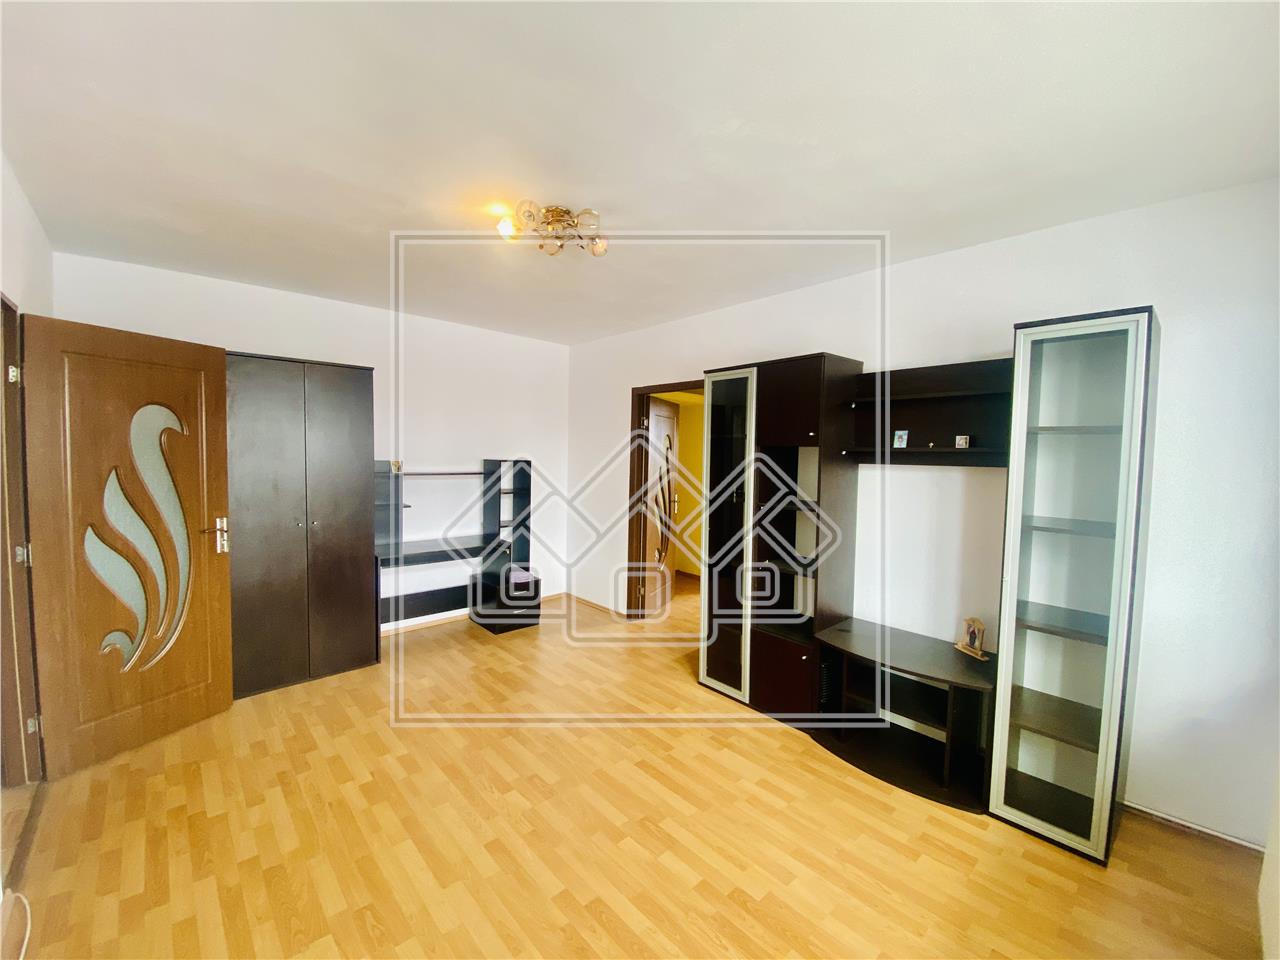 Apartament de vanzare in Sibiu - 2 camere si balcon - Zona Terezian